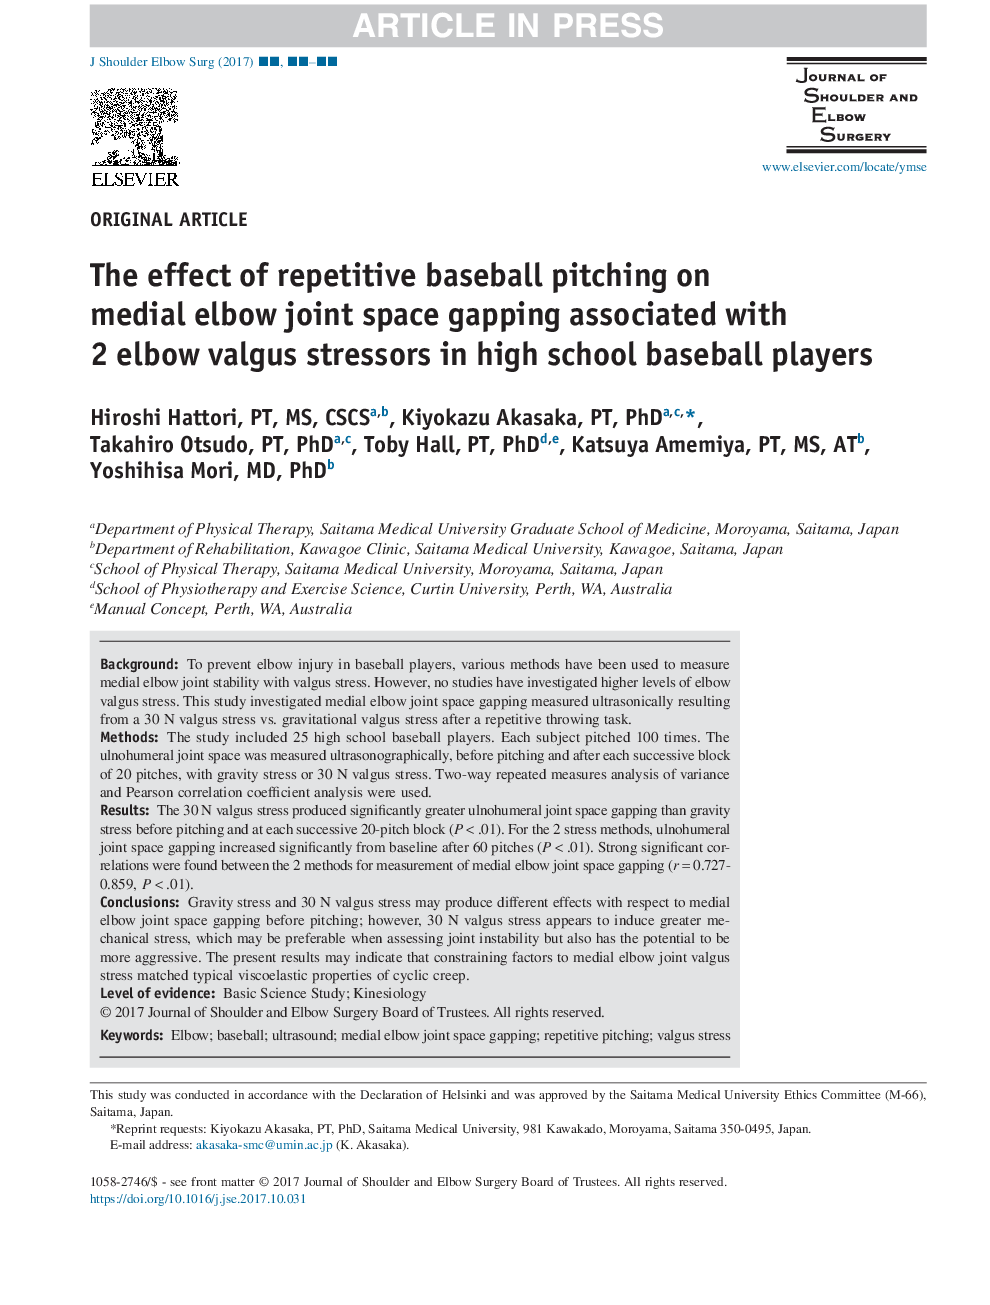 تاثیر تکرارپذیری کامپیوتری بیس بال بر روی فضای کوتاه فکی مفصل آرنج در ارتباط با استرس زدن 2 باله آرنج در بازیکنان بیسبال دبیرستان 